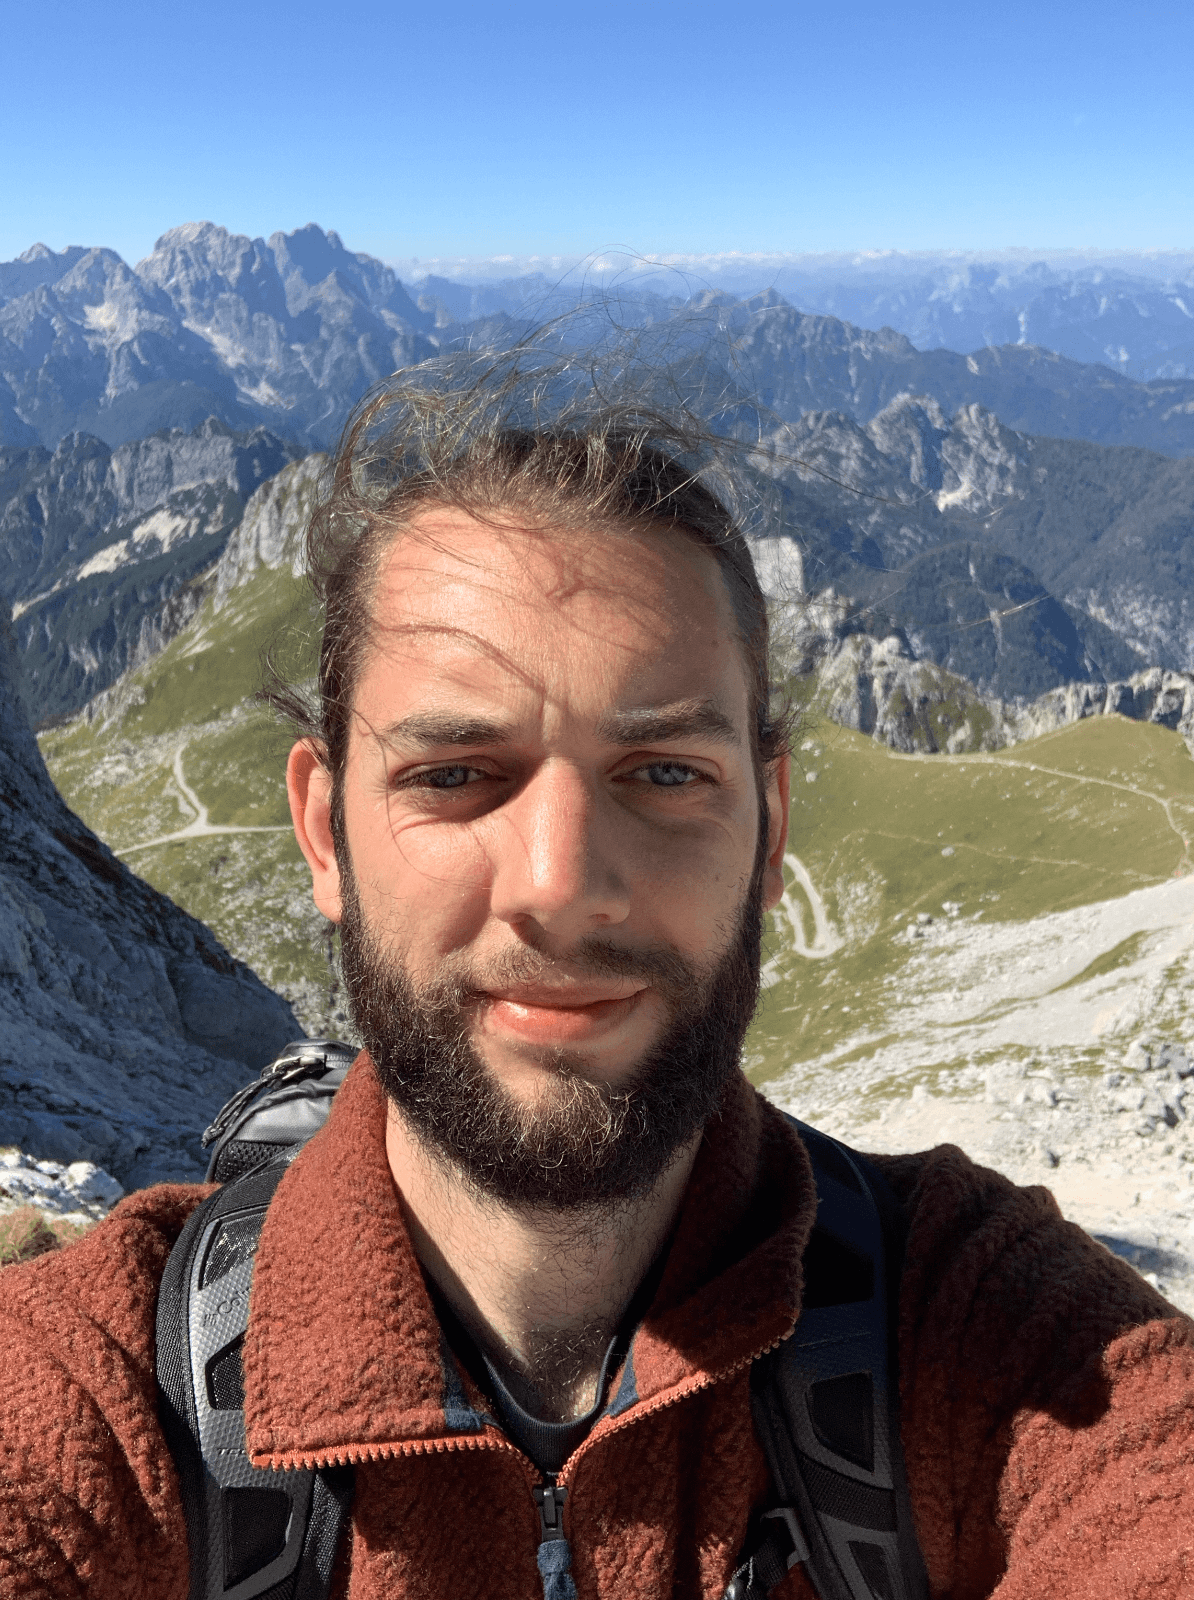 Selfie of Moritz standing in the Slovenian Alps